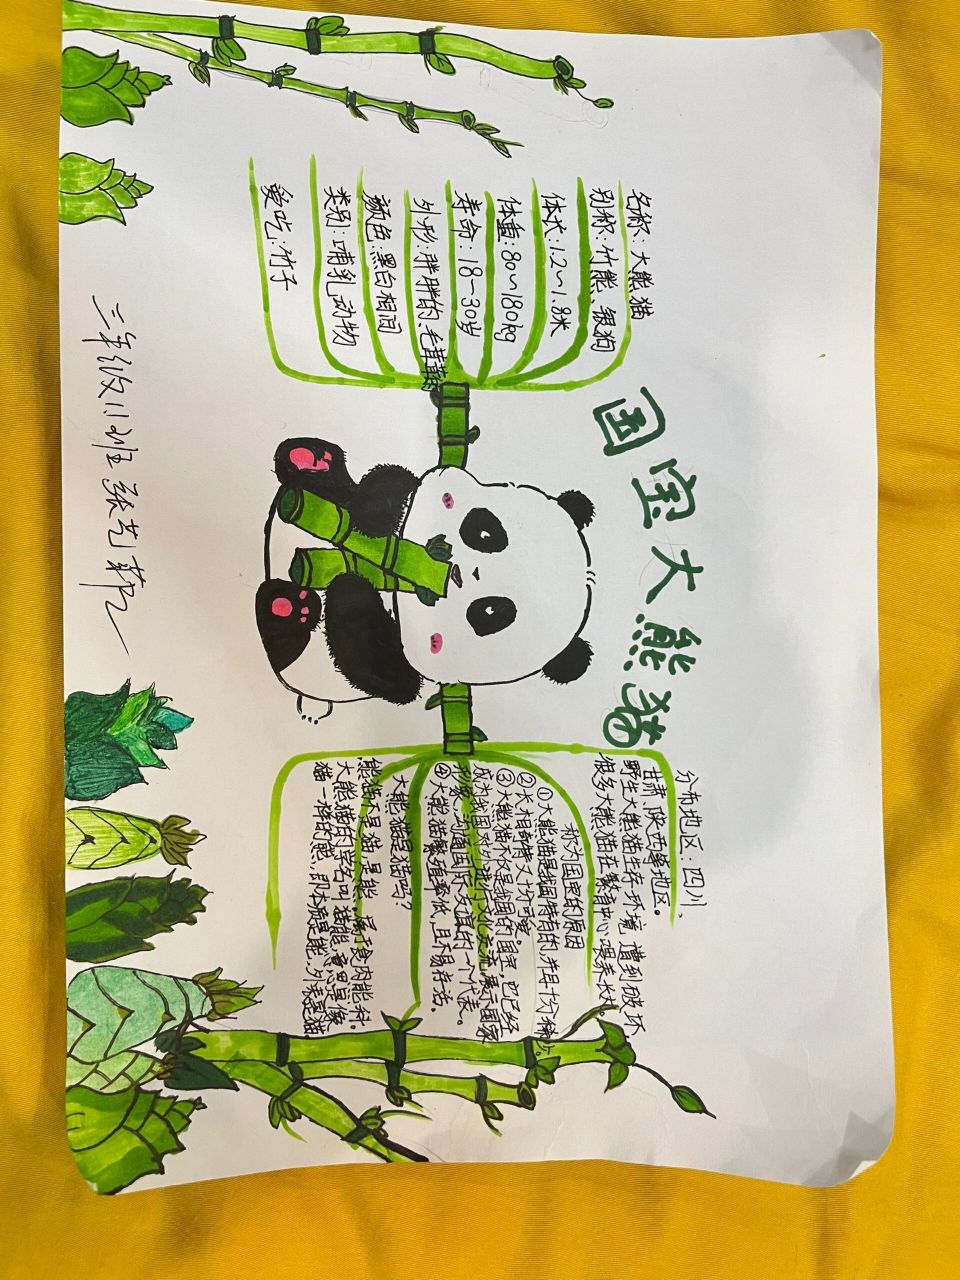 大熊猫资料三年级下册图片